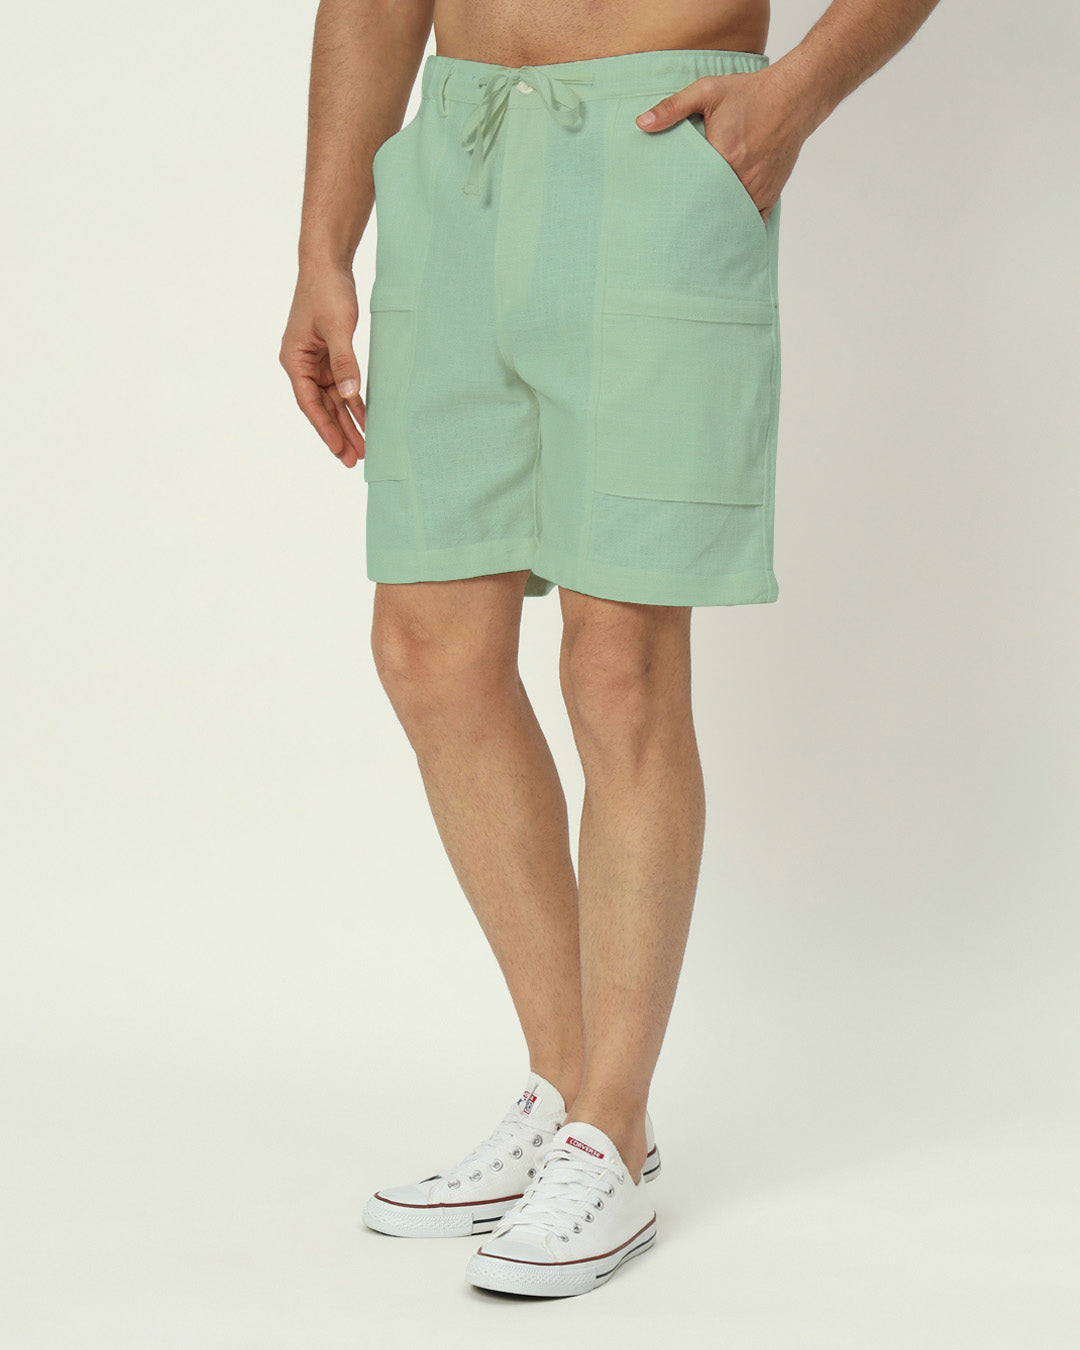 Comfortable City Dweller Spring Green Men's Shorts